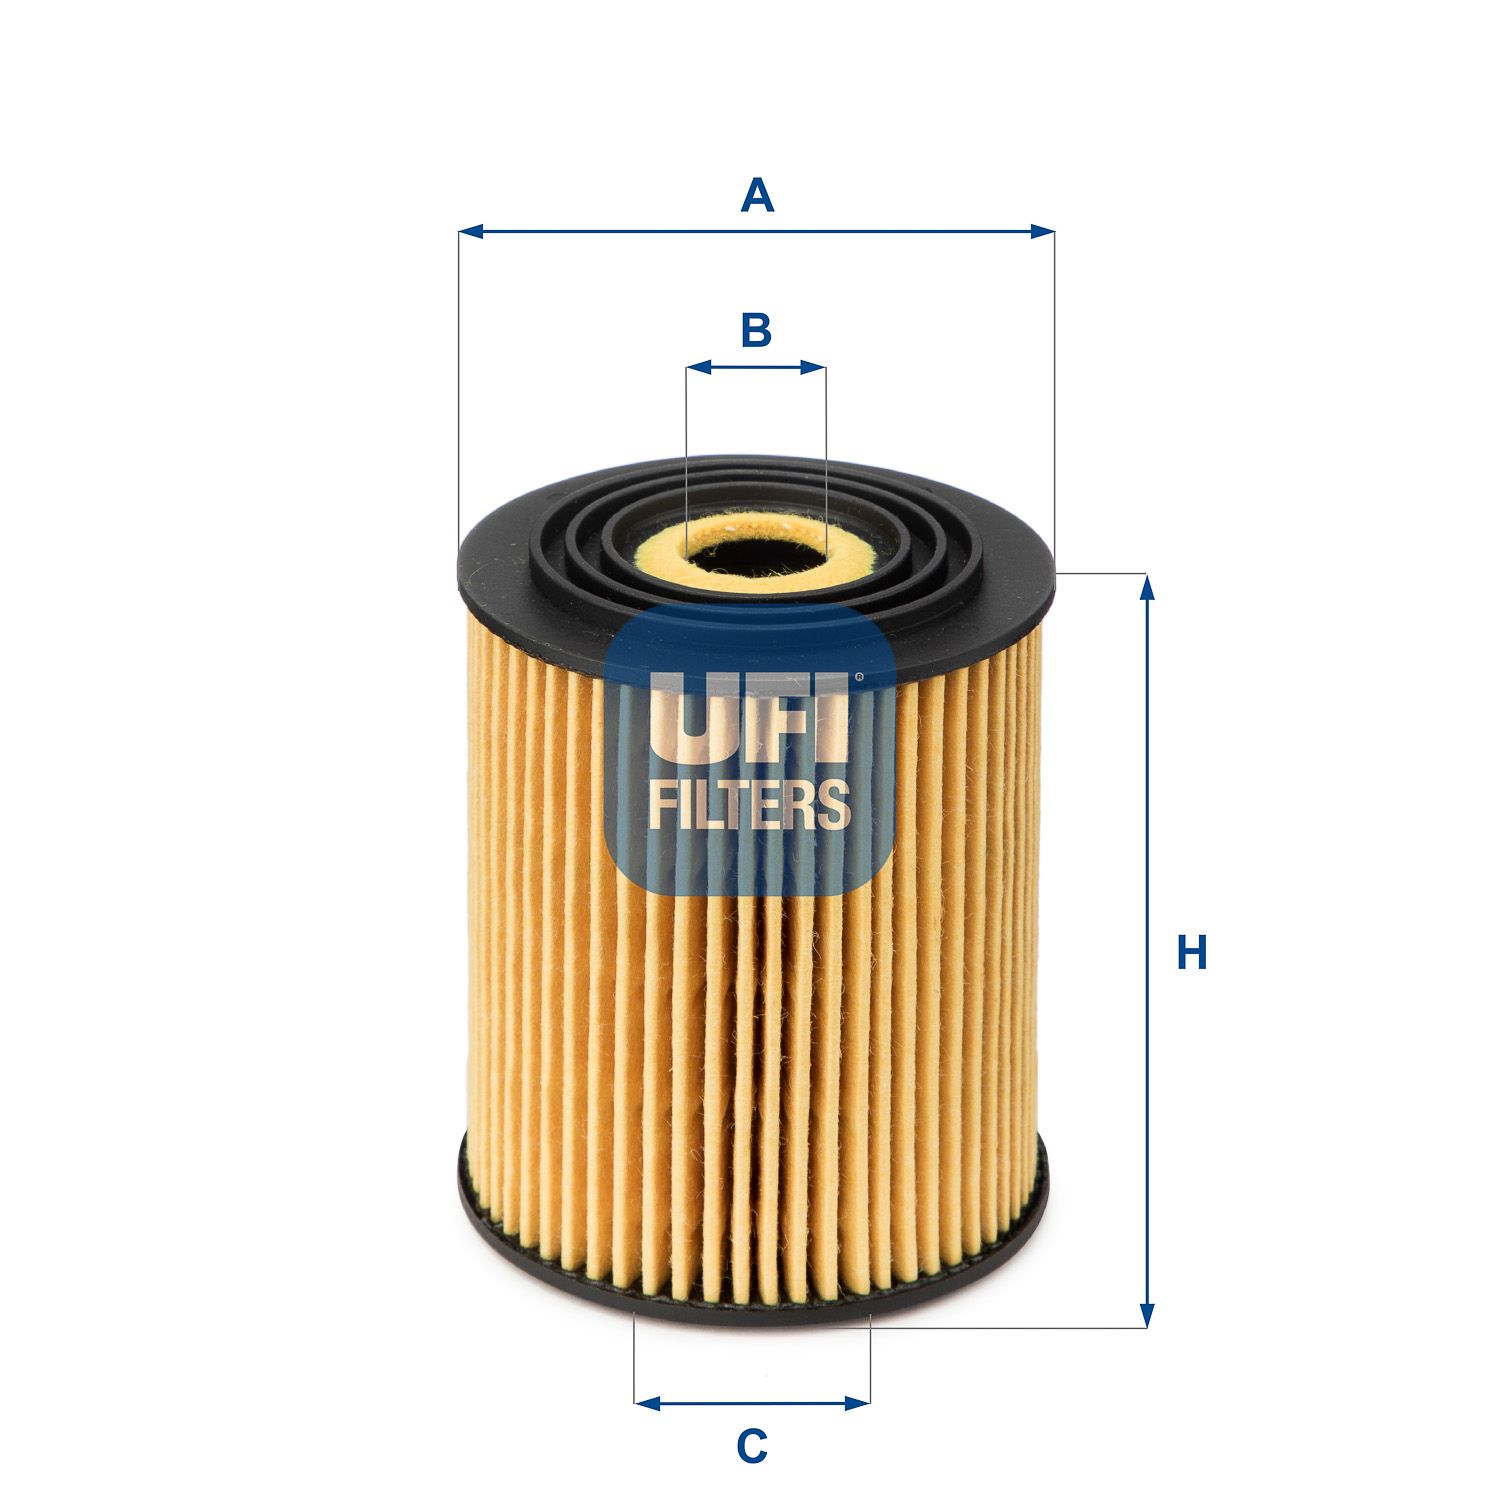 Olejový filter UFI 25.034.00